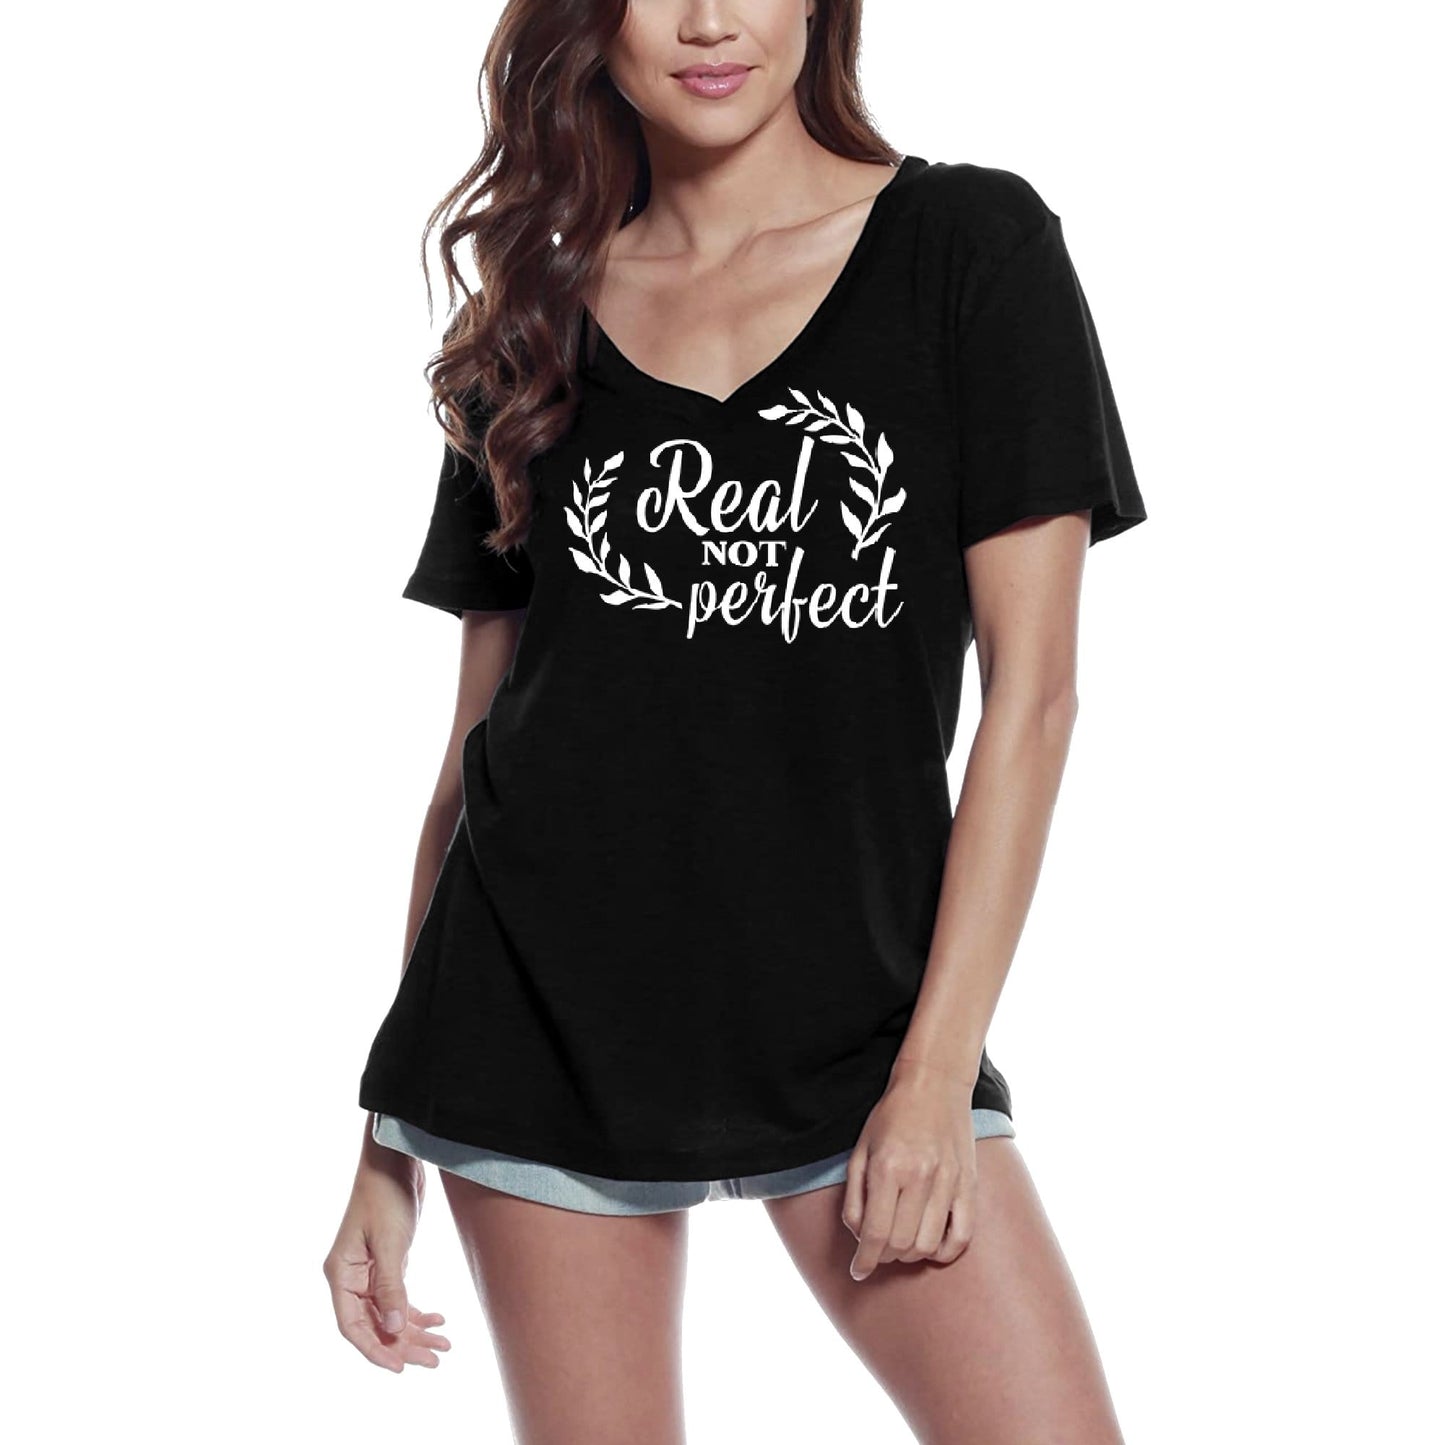 ULTRABASIC Women's T-Shirt Real Not Perfect - Short Sleeve Tee Shirt Tops